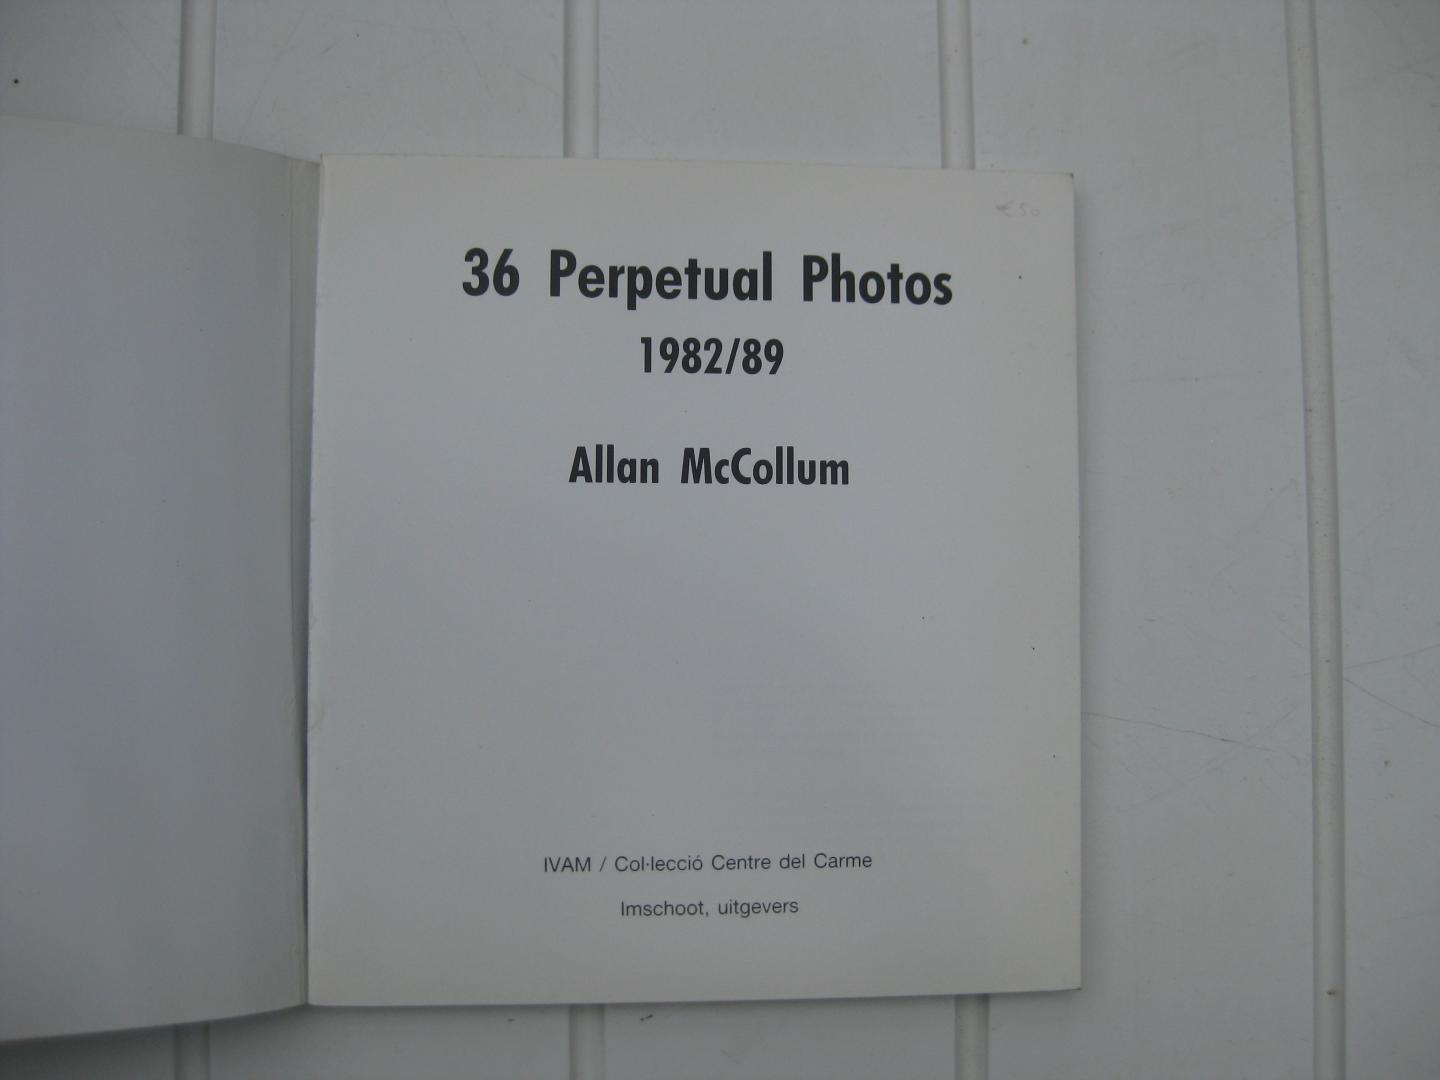 McCollum, Allan - 36 Perpetual Photos 1982/89.